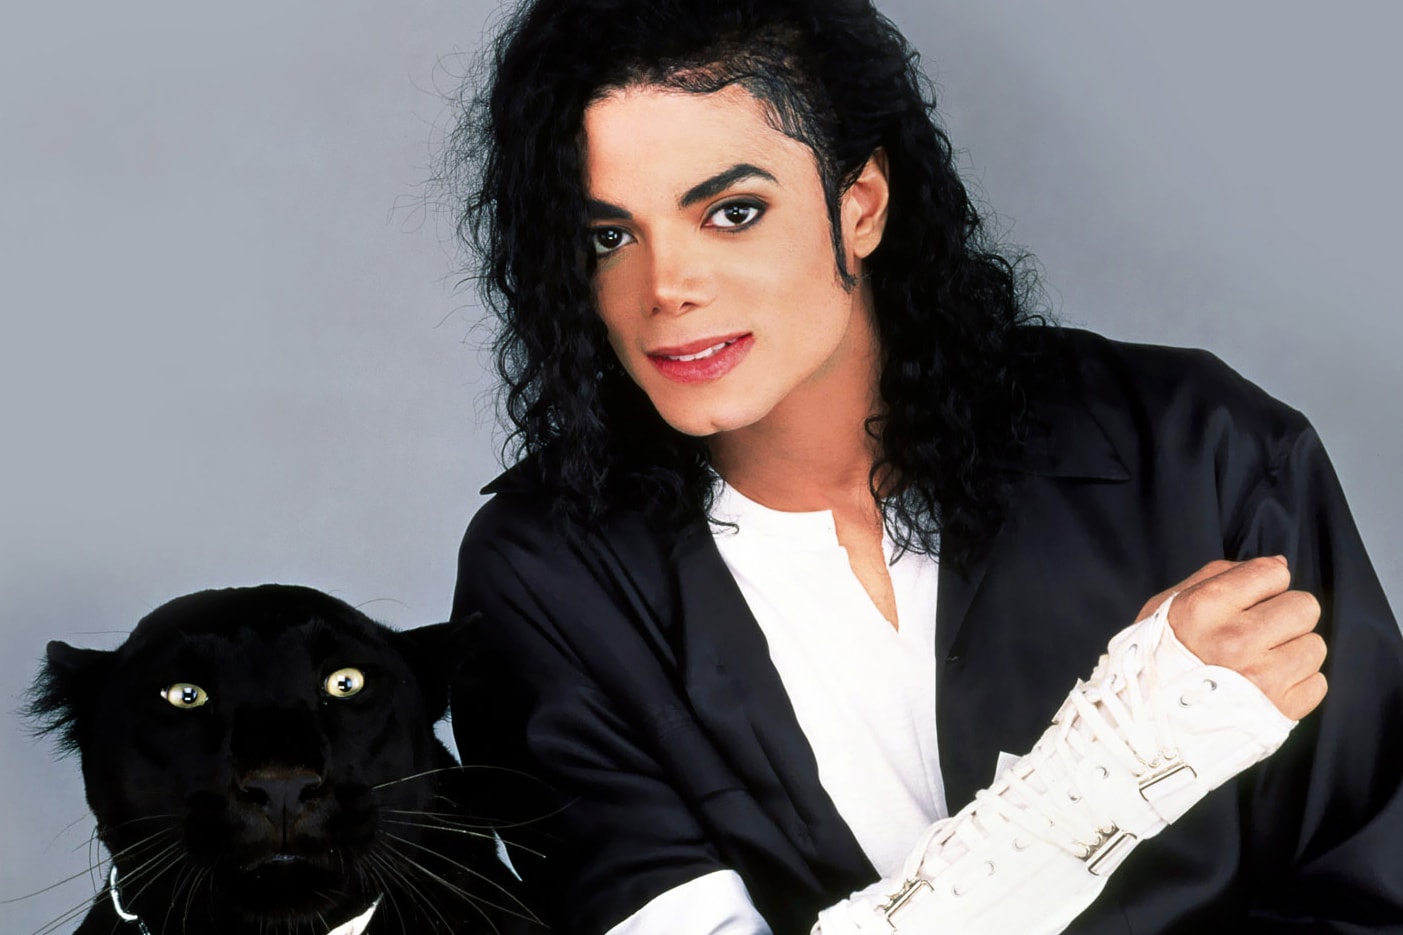 Michael Jackson Highest-Paid Dead Celebrity 2016